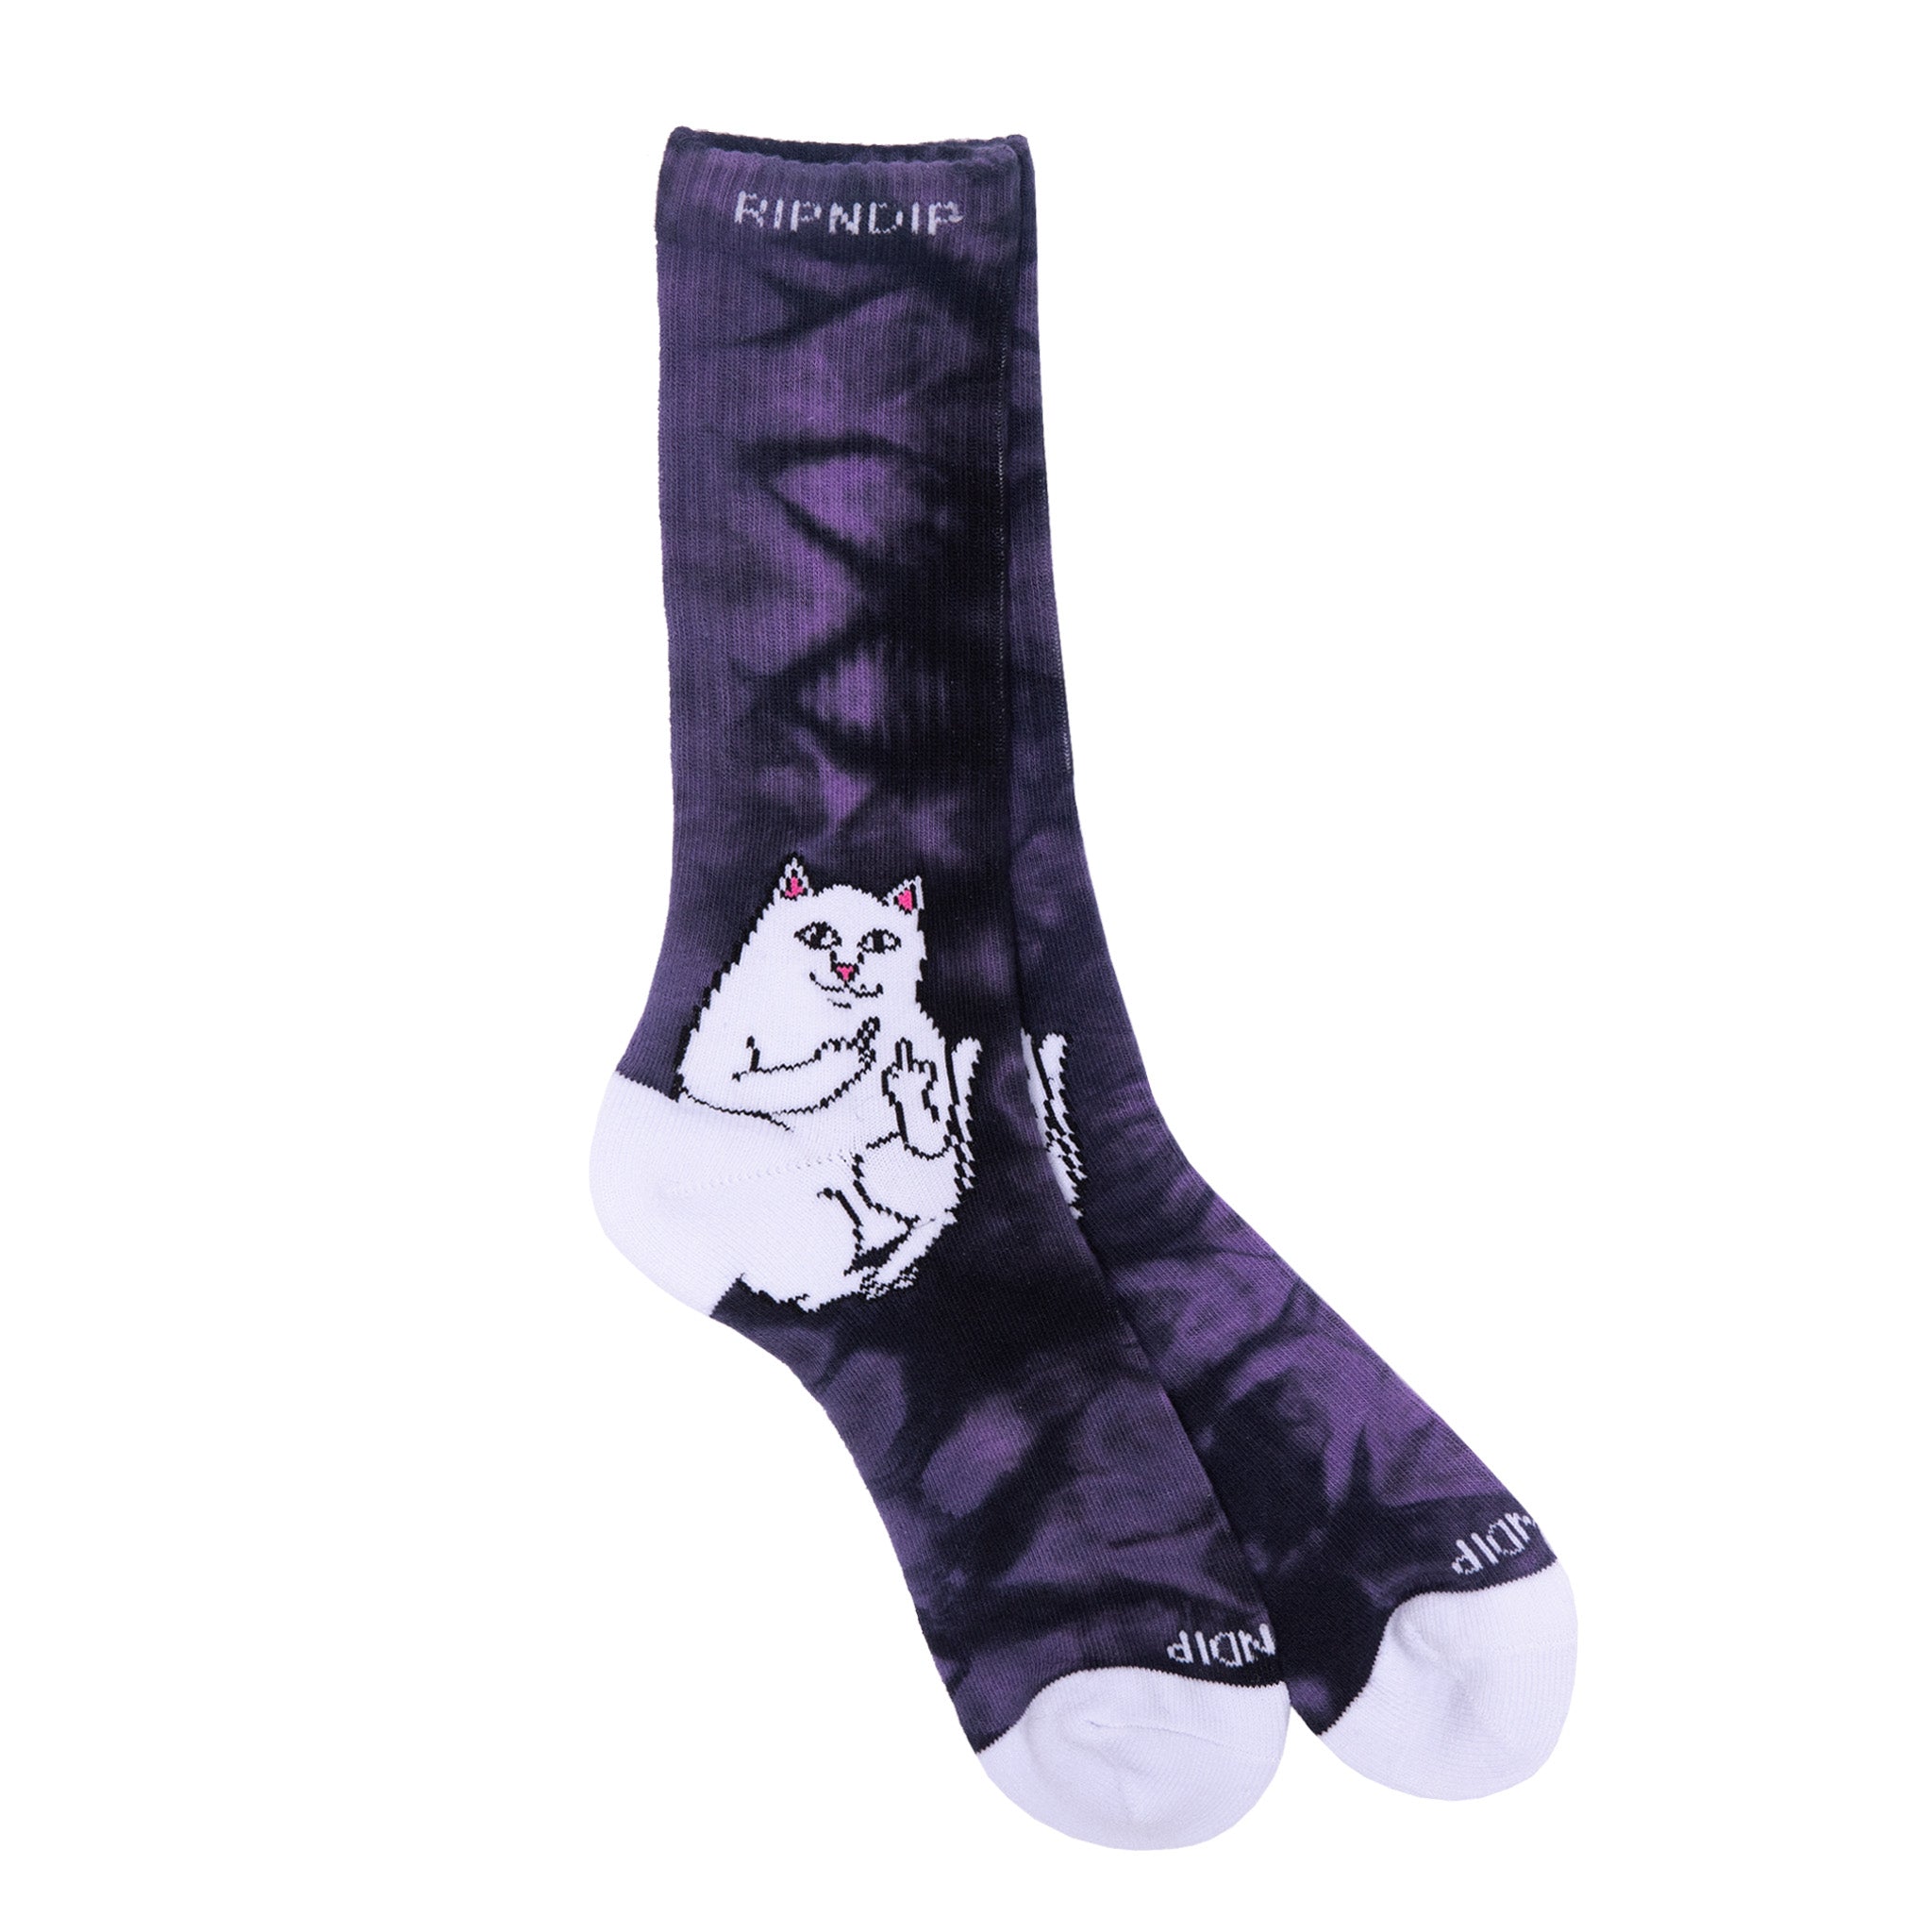 340878 CA: 171317 Lord Nermal Socks (Purple Lightning)